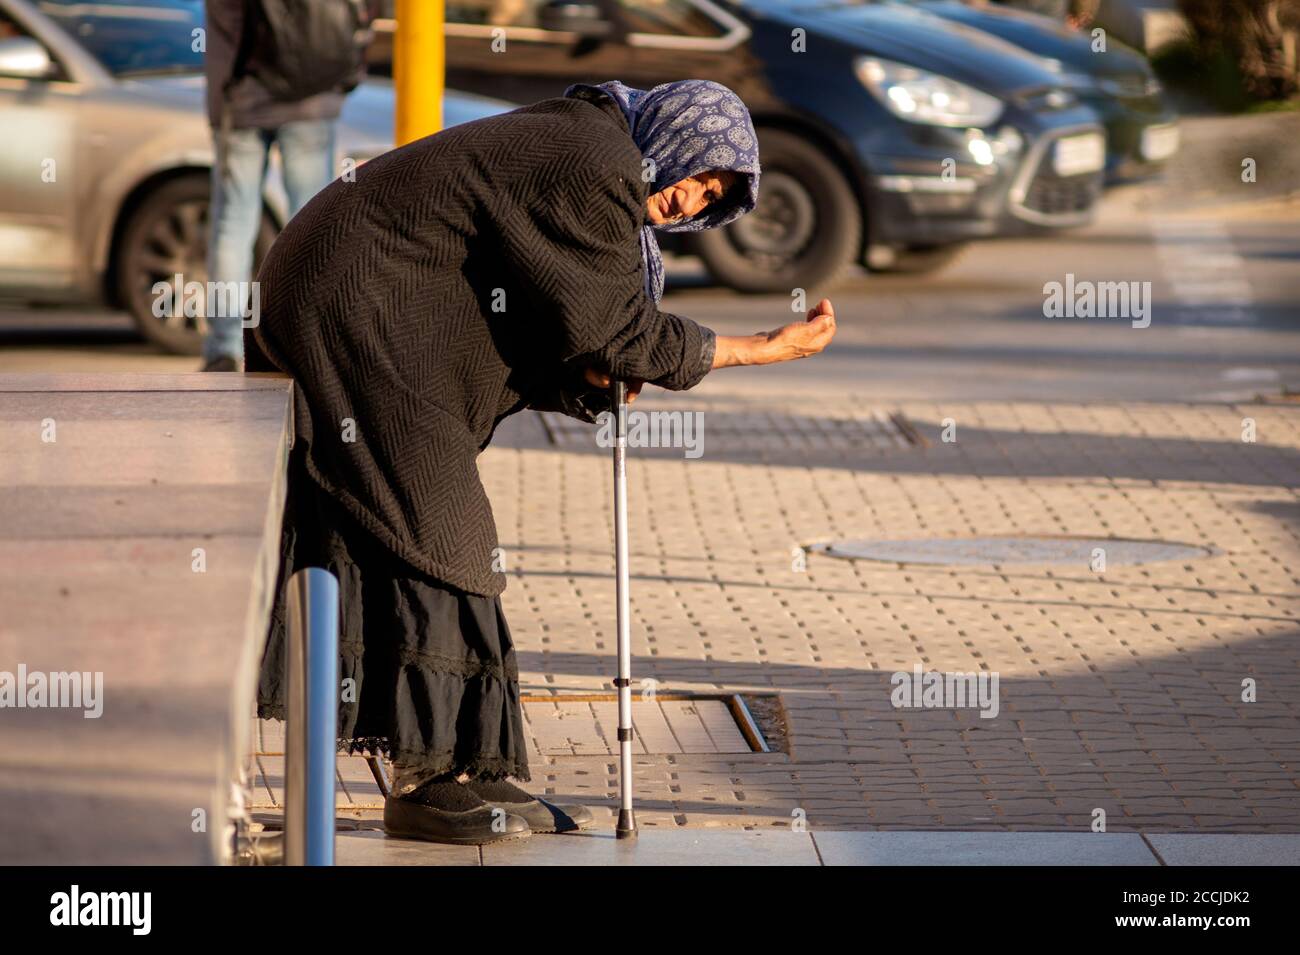 Mendiant femelle senior regardant directement dans la caméra tout en mendiant Pour de l'argent dans les rues de Sofia Bulgarie Banque D'Images